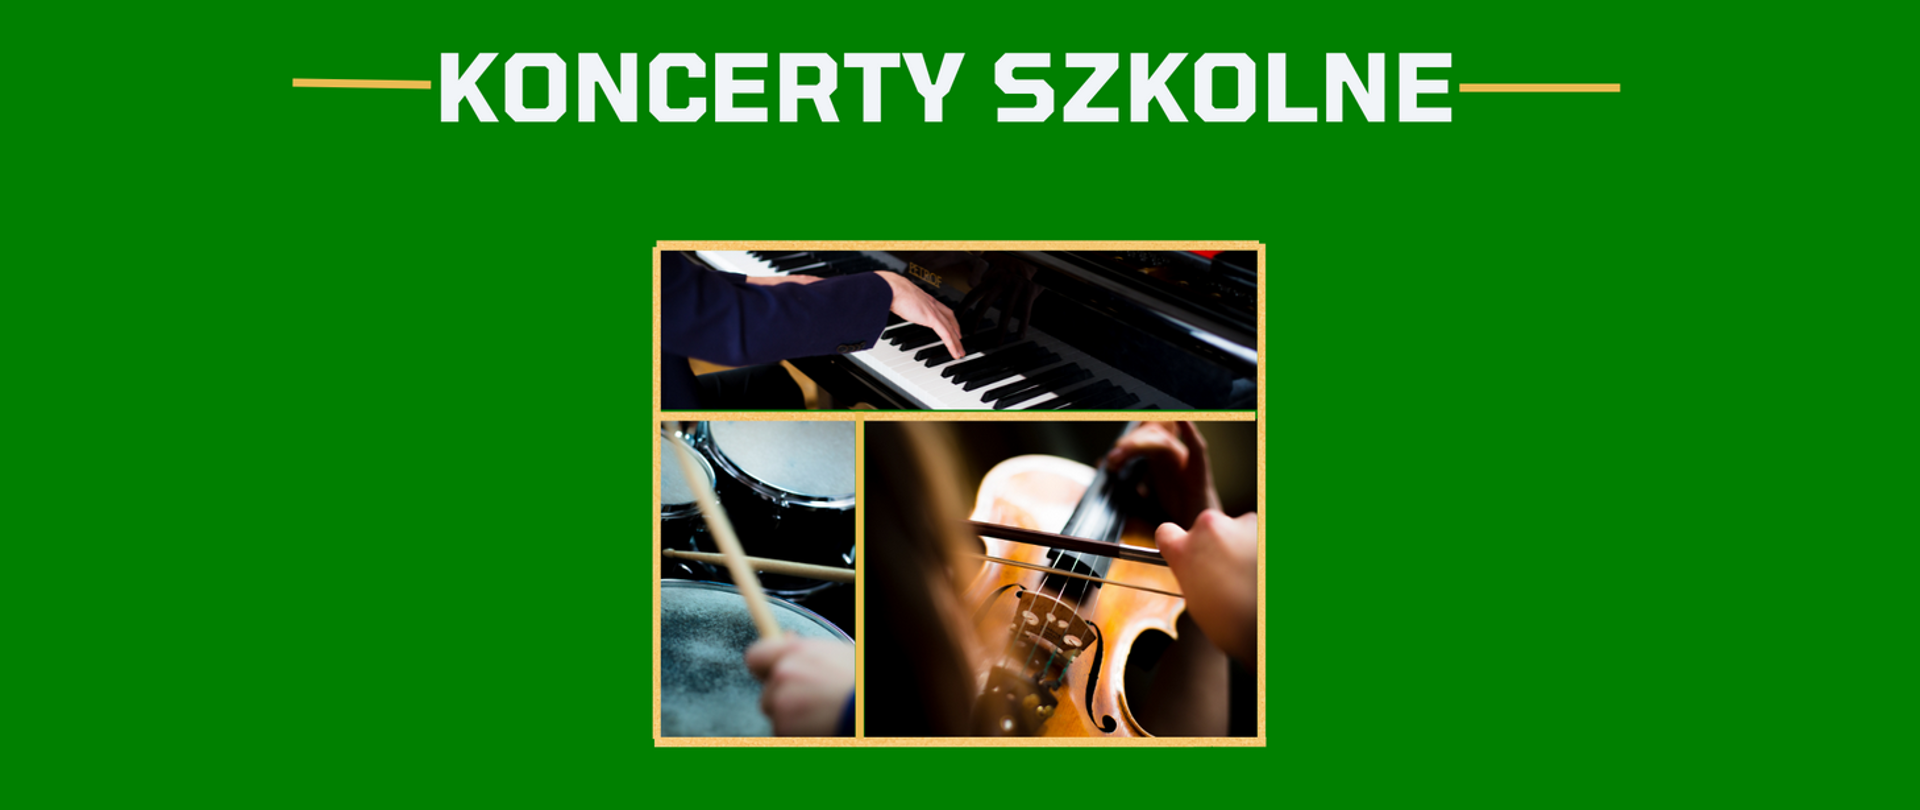 Grafika, zielone tło; na środku zdjęcie instrumentów muzycznych; tekst: KONCERTY SZKOLNE